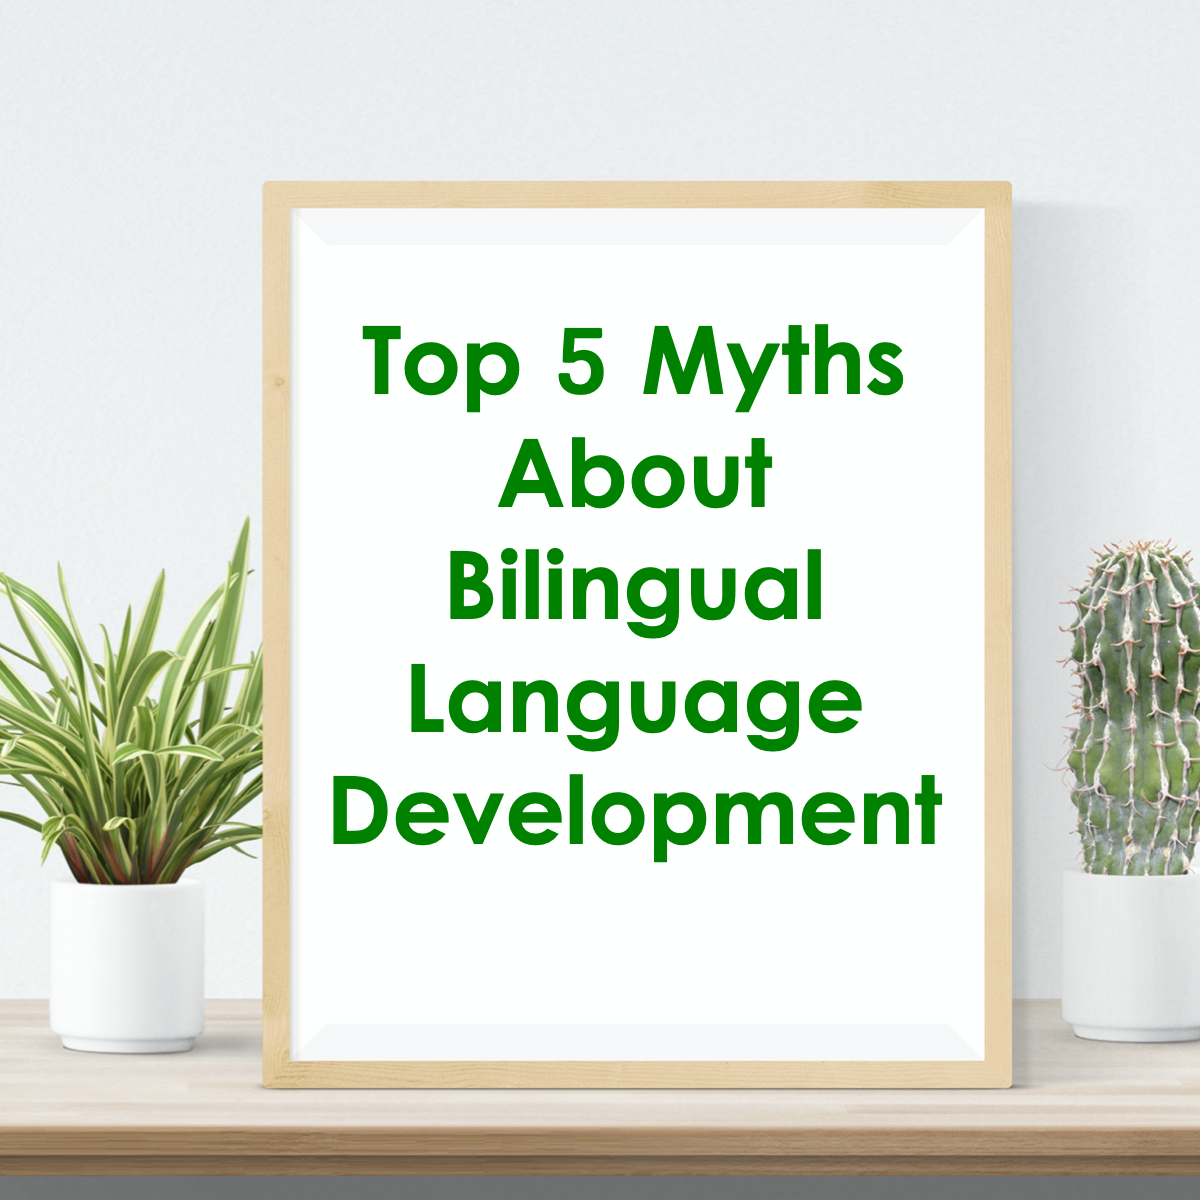 Top 5 Myths About Bilingual Language Development